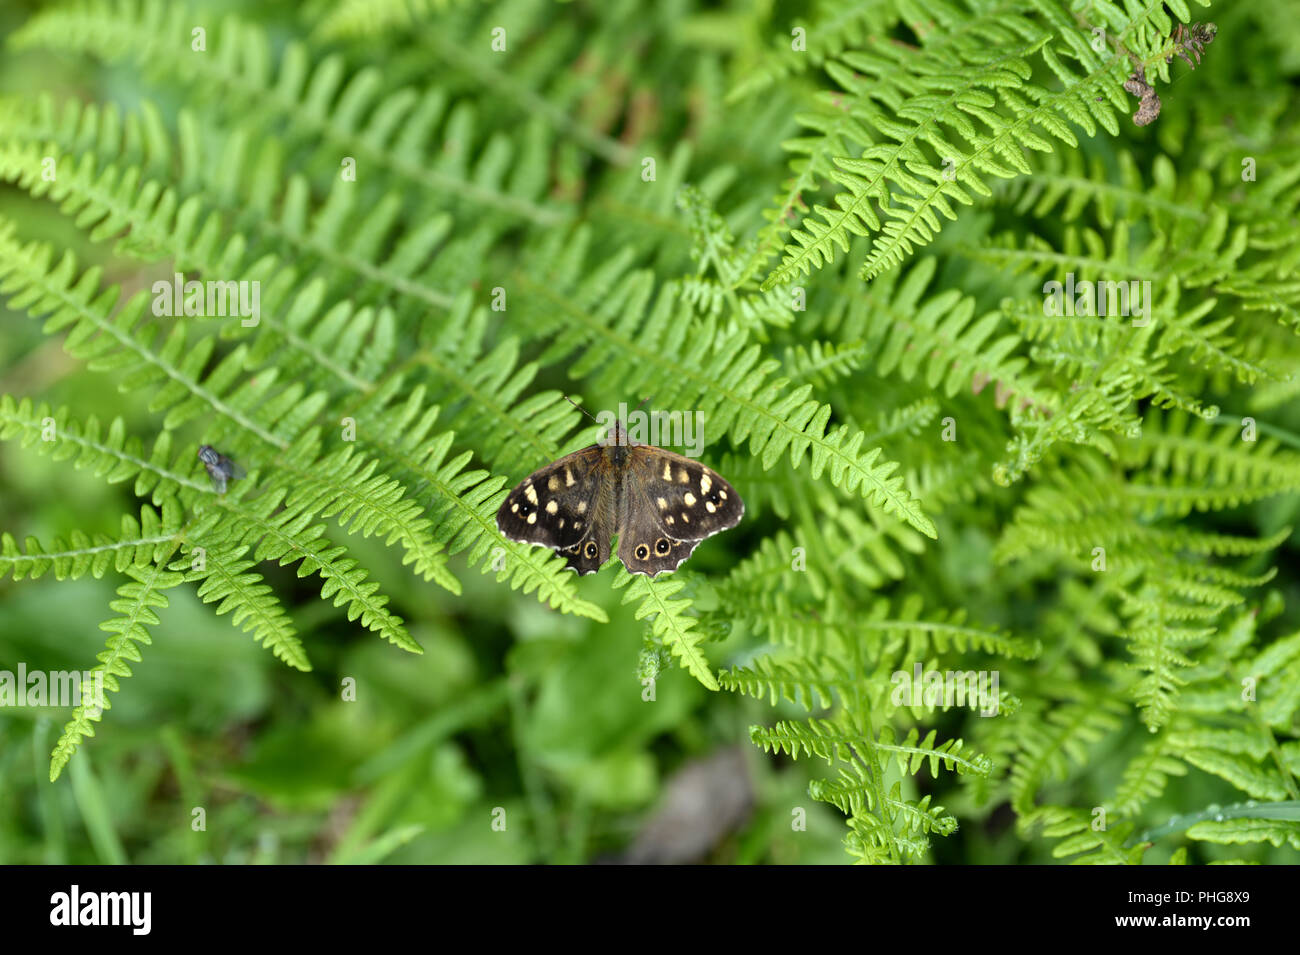 Hauhechelbläuling Schmetterling auf bracken Blätter im Wald grenze zeigen braune Flügel mit cremig-gelben Flecken. Ein Haus fliegen bietet eine Idee der Skala Stockfoto